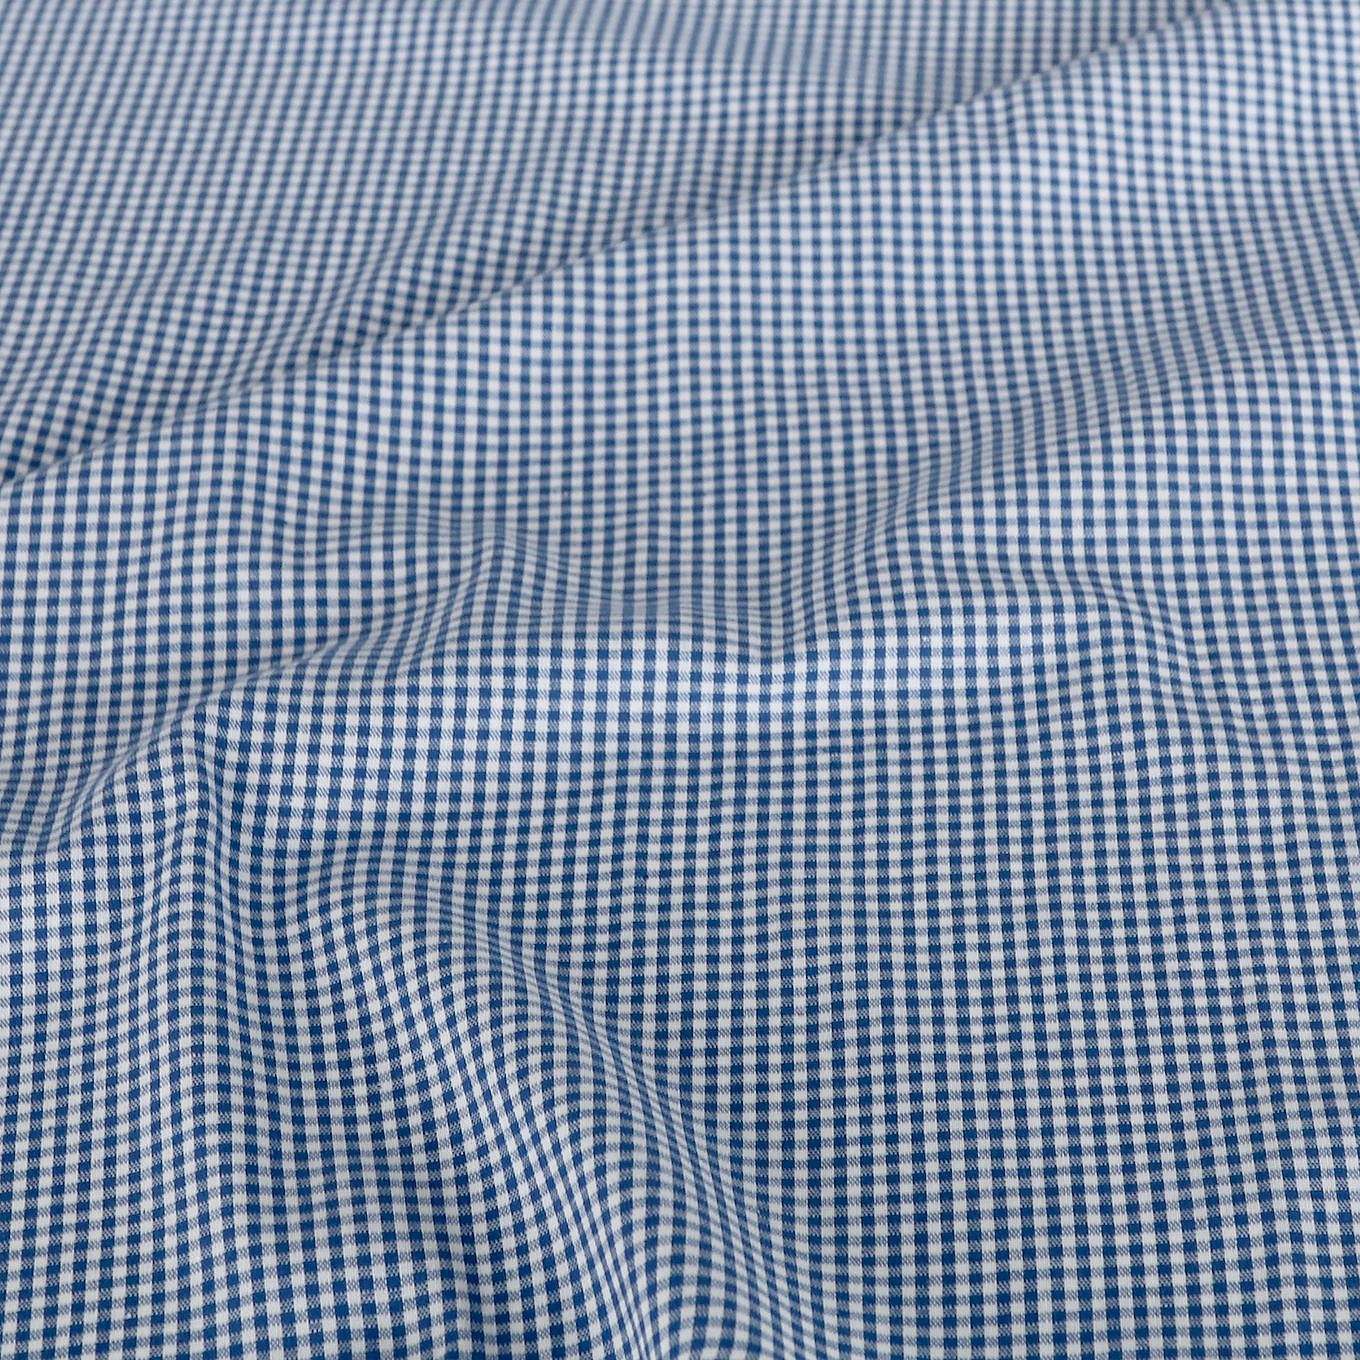 Weiche Karo Baumwollstoff Meterware für Kleid Gardine Vorhang - blau weiß